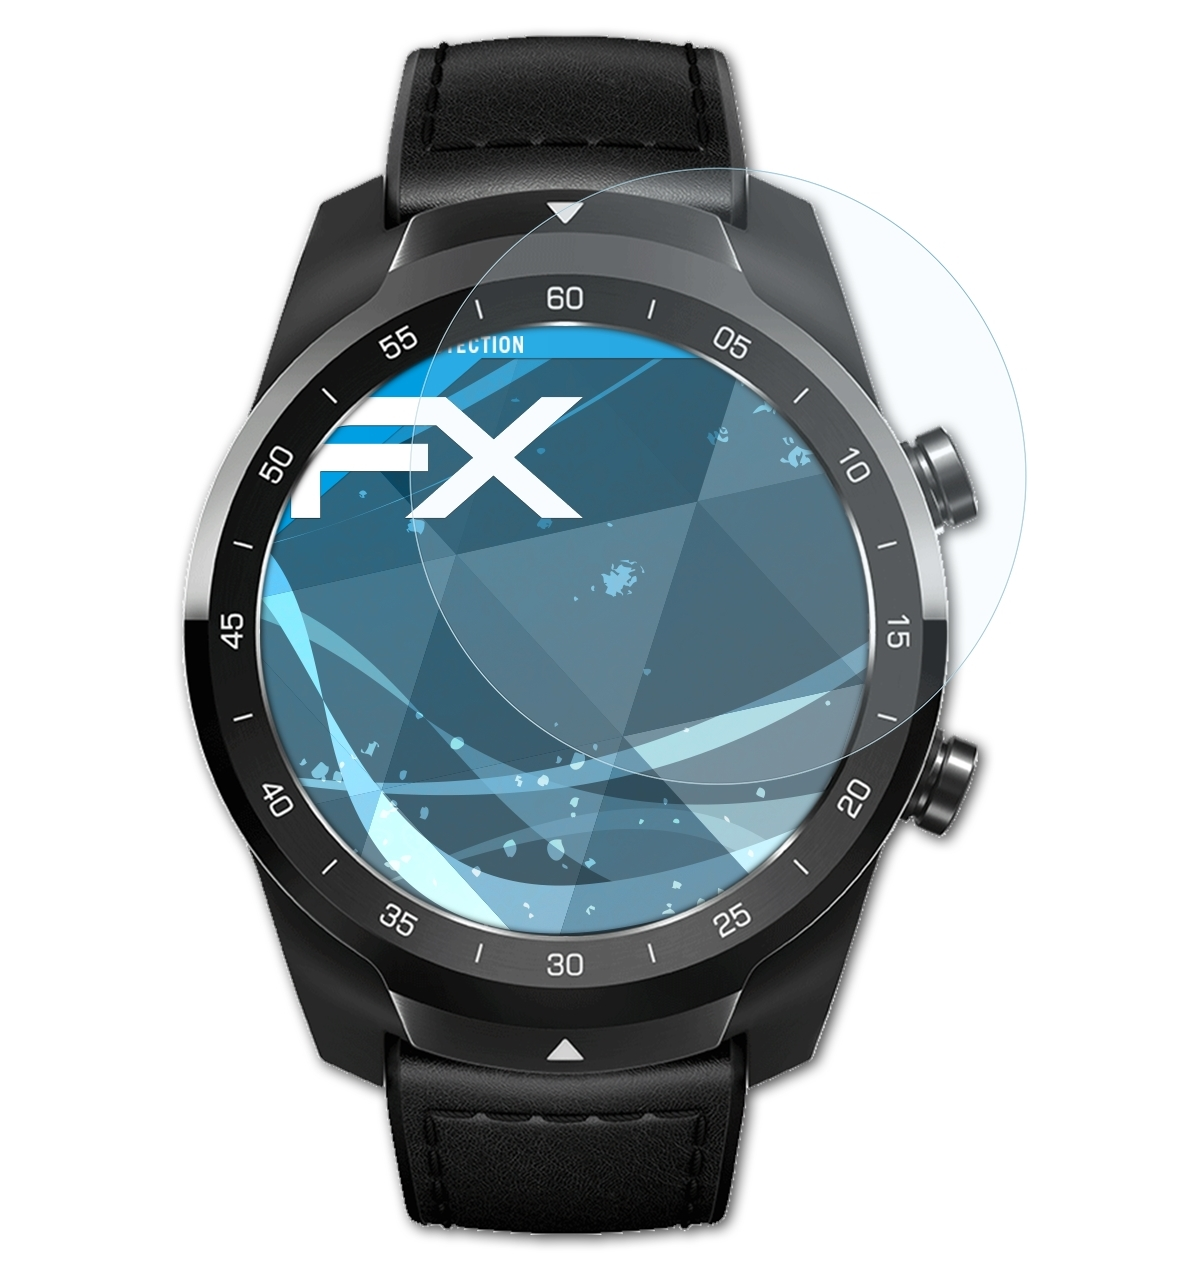 ATFOLIX 3x FX-Clear Displayschutz(für Mobvoi S) Pro TicWatch